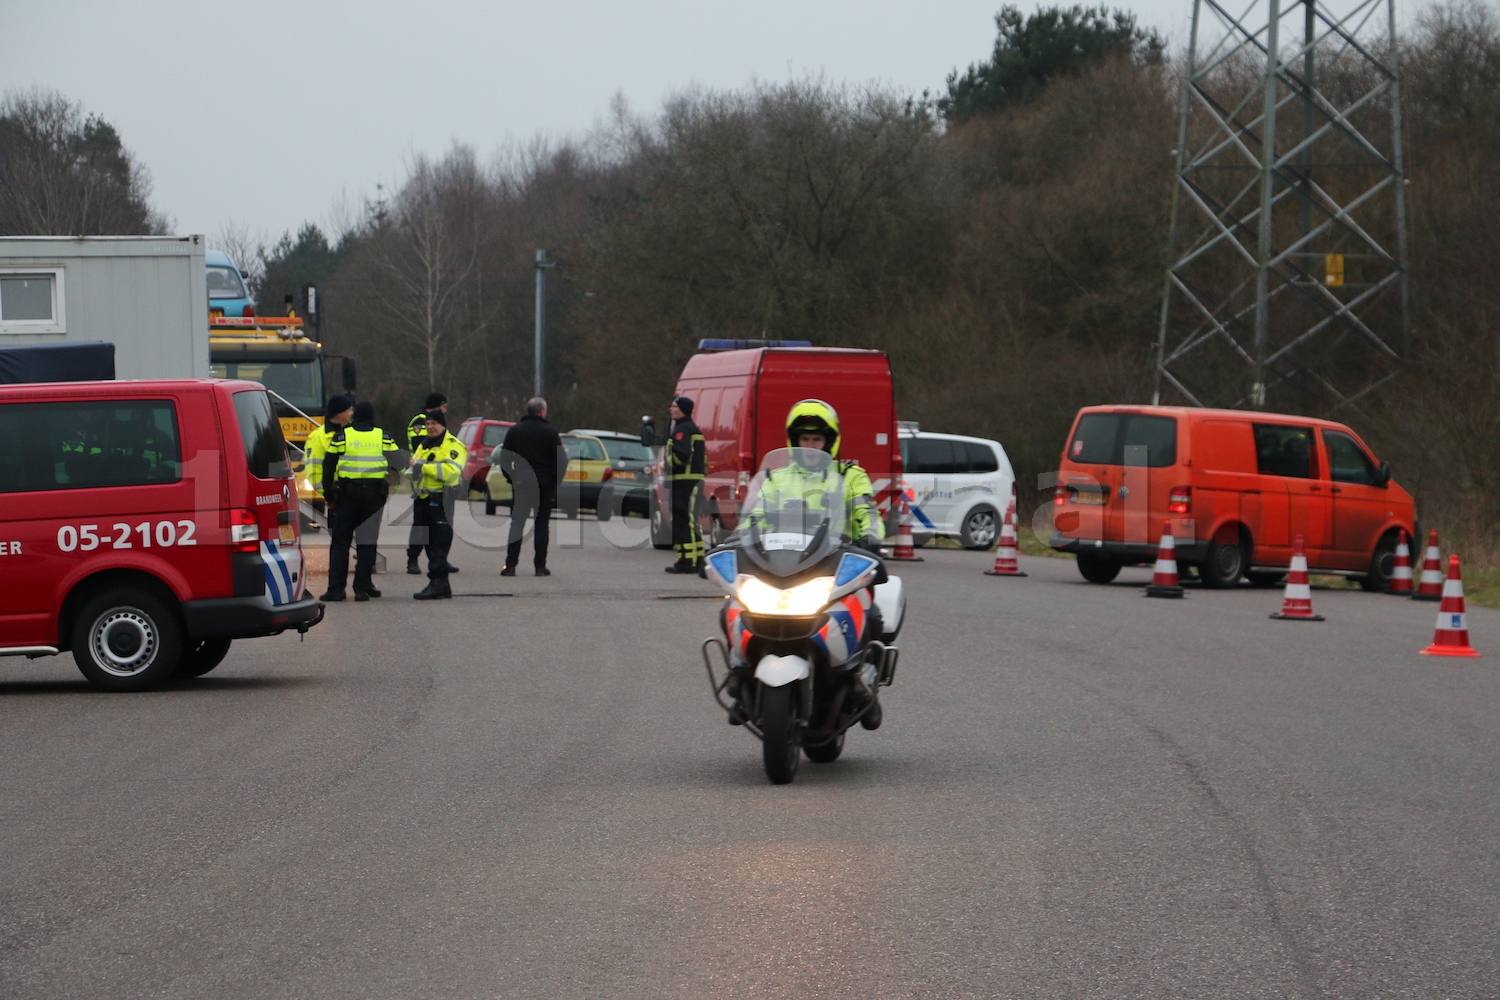 Foto 3: Politie en belastingdienst houden gezamenlijke verkeerscontrole in Oldenzaal, meerdere voertuigen in beslag genomen